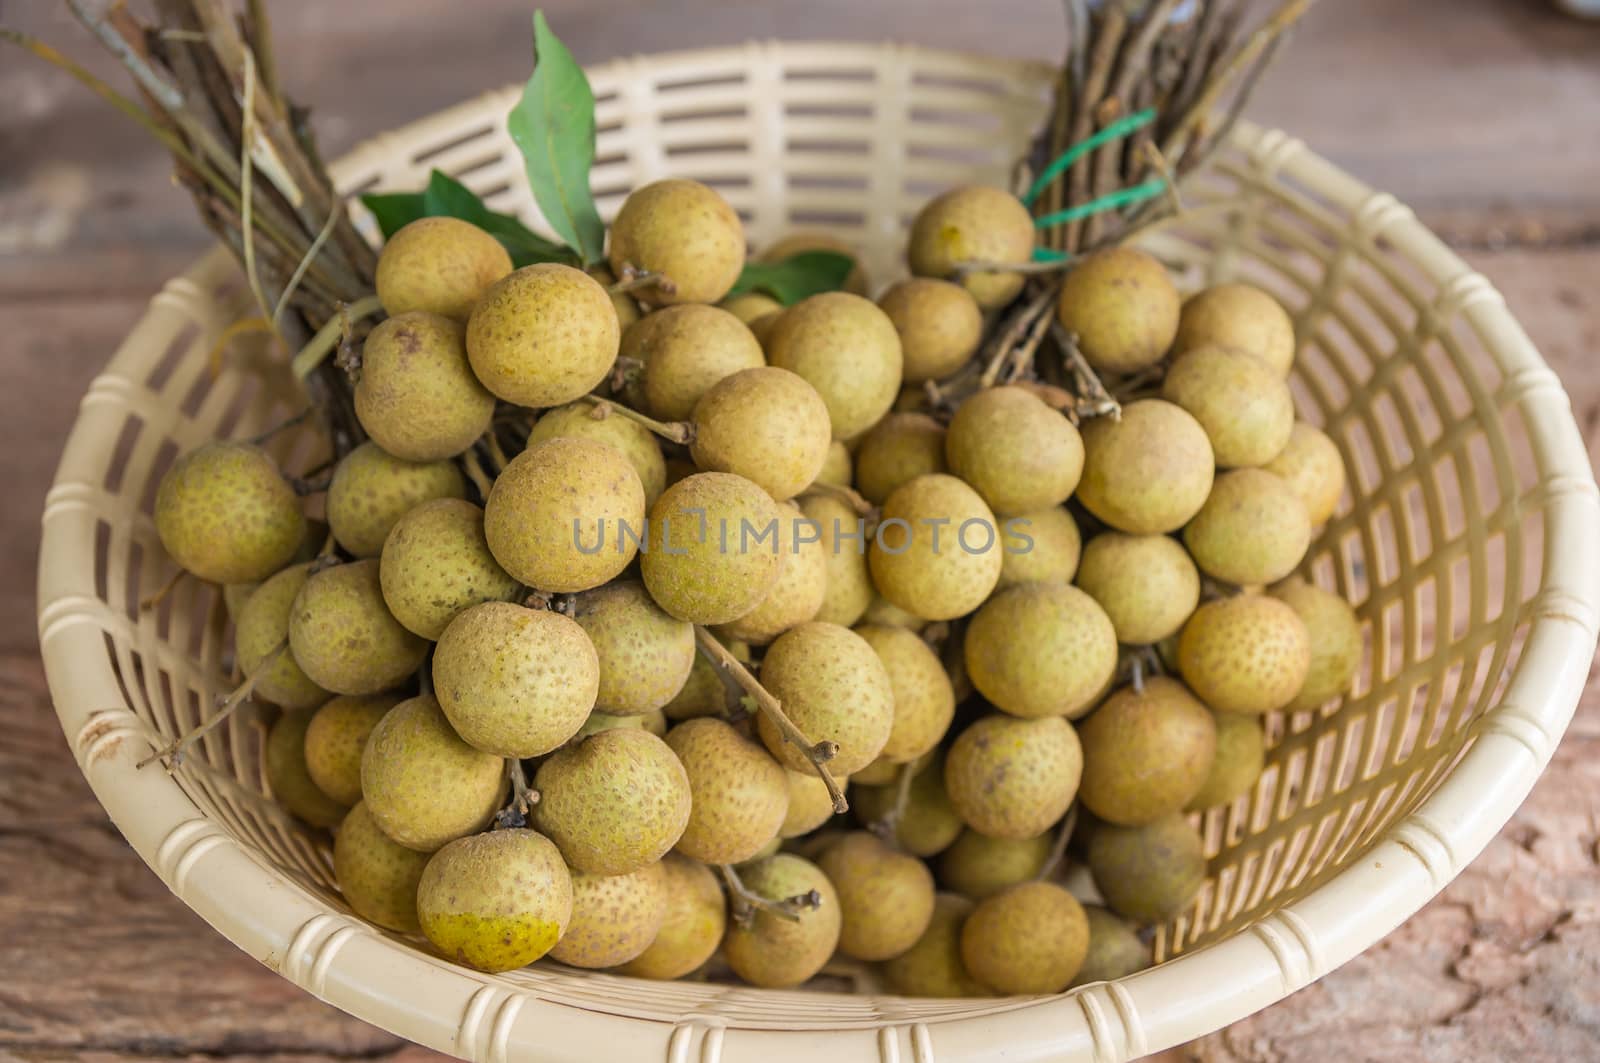 Fresh longan fruits in basket.